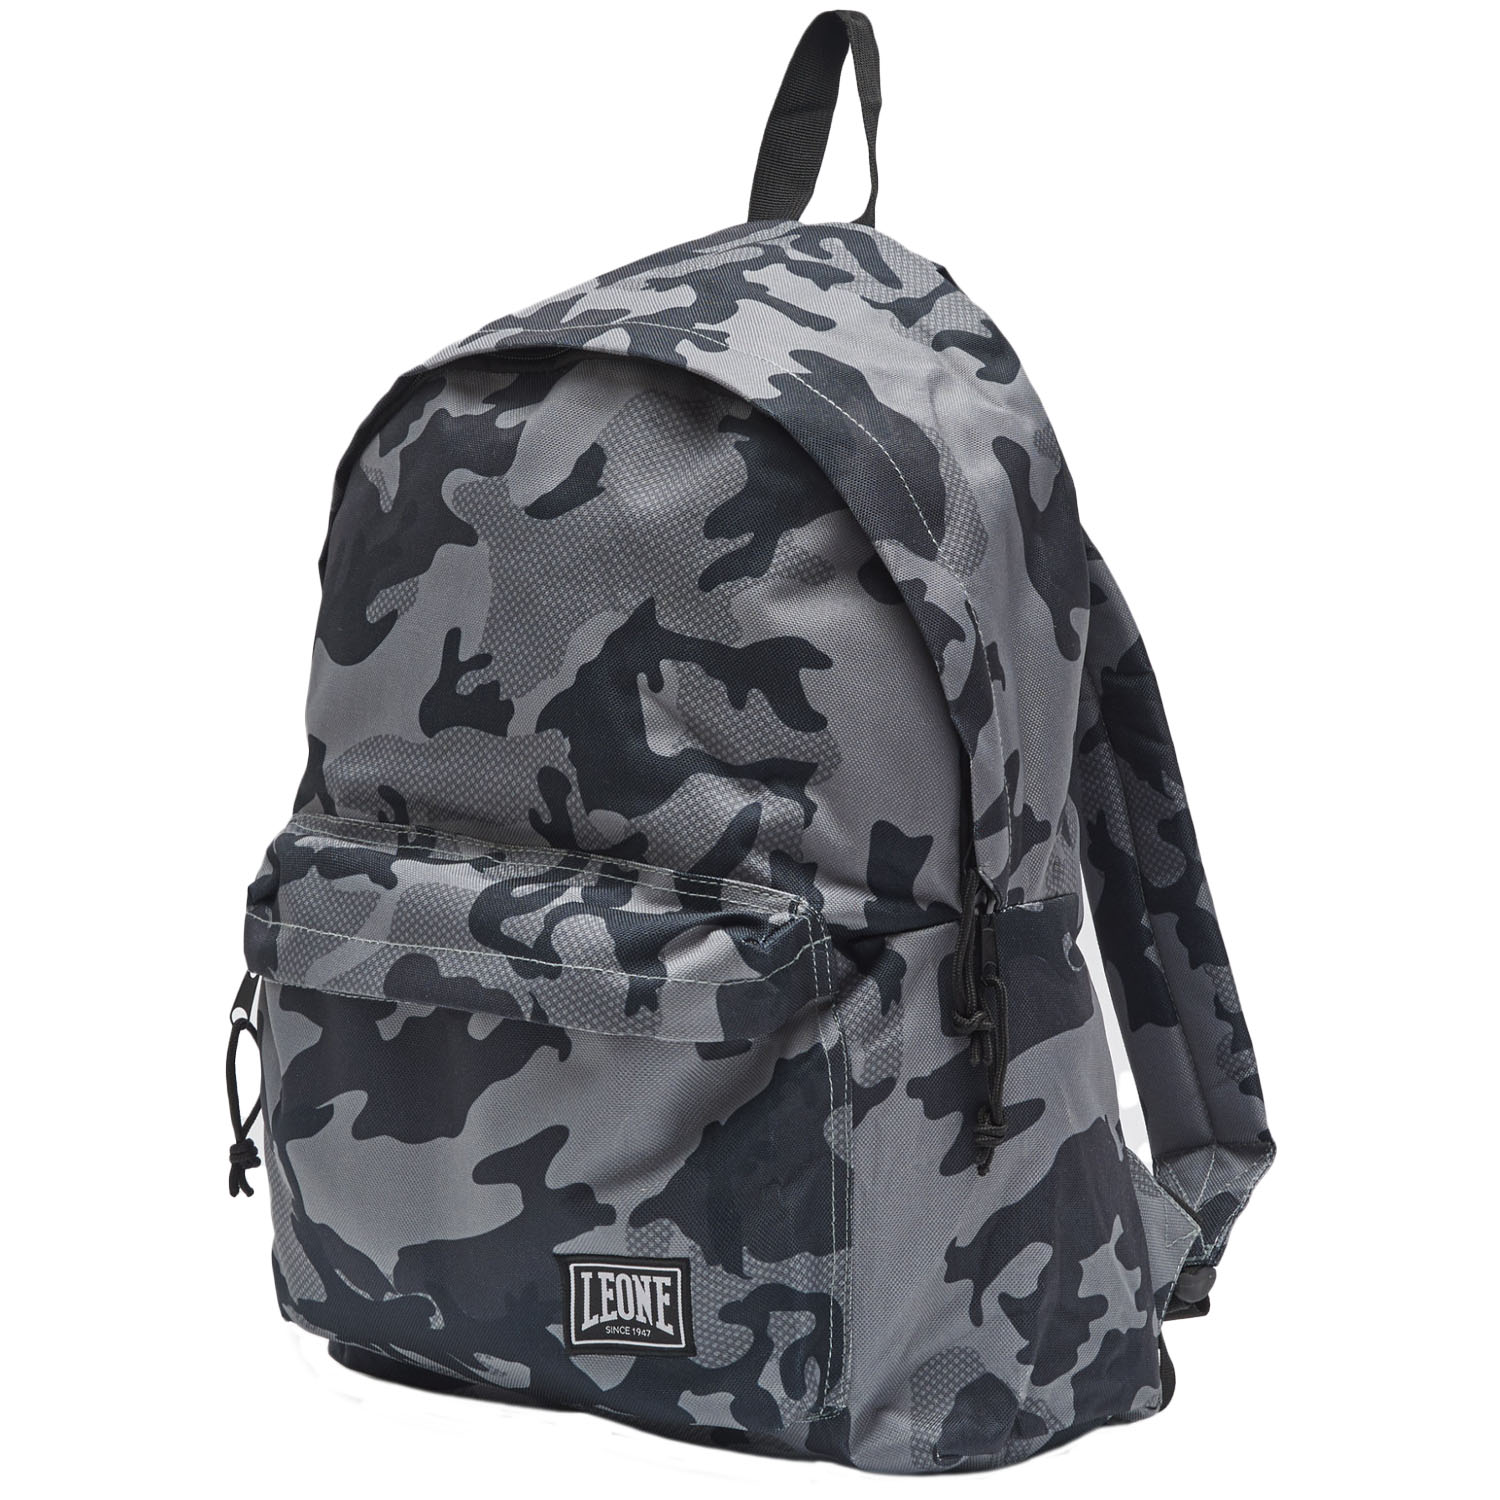 LEONE Backpack, AC951, camo-grau